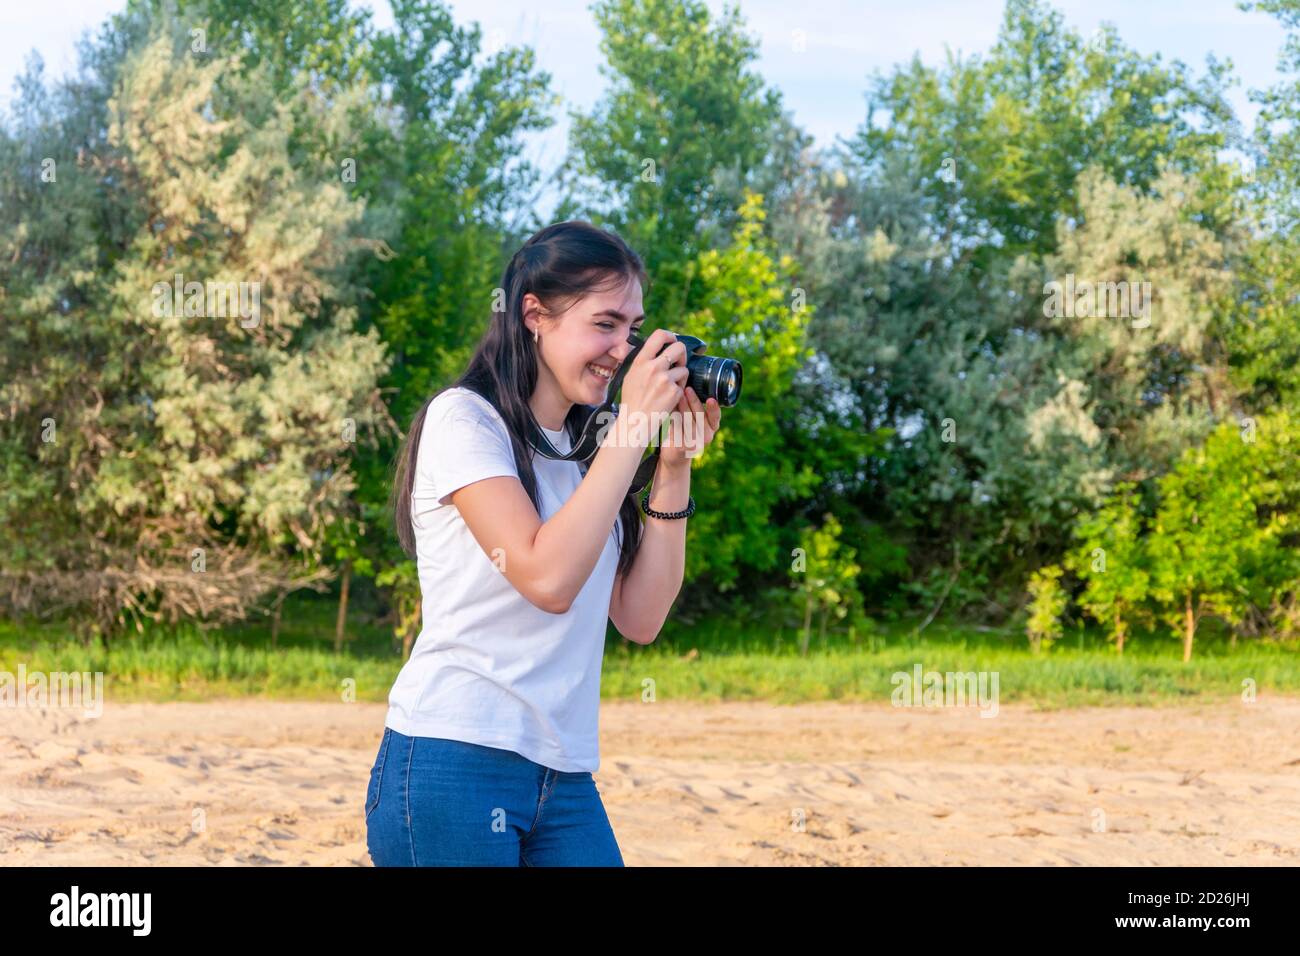 Mujer fotógrafa profesional en el trabajo. Tomar fotos al aire libre en el parque. La morena mira la cámara y se ríe. Enfoque selectivo. Foto de stock